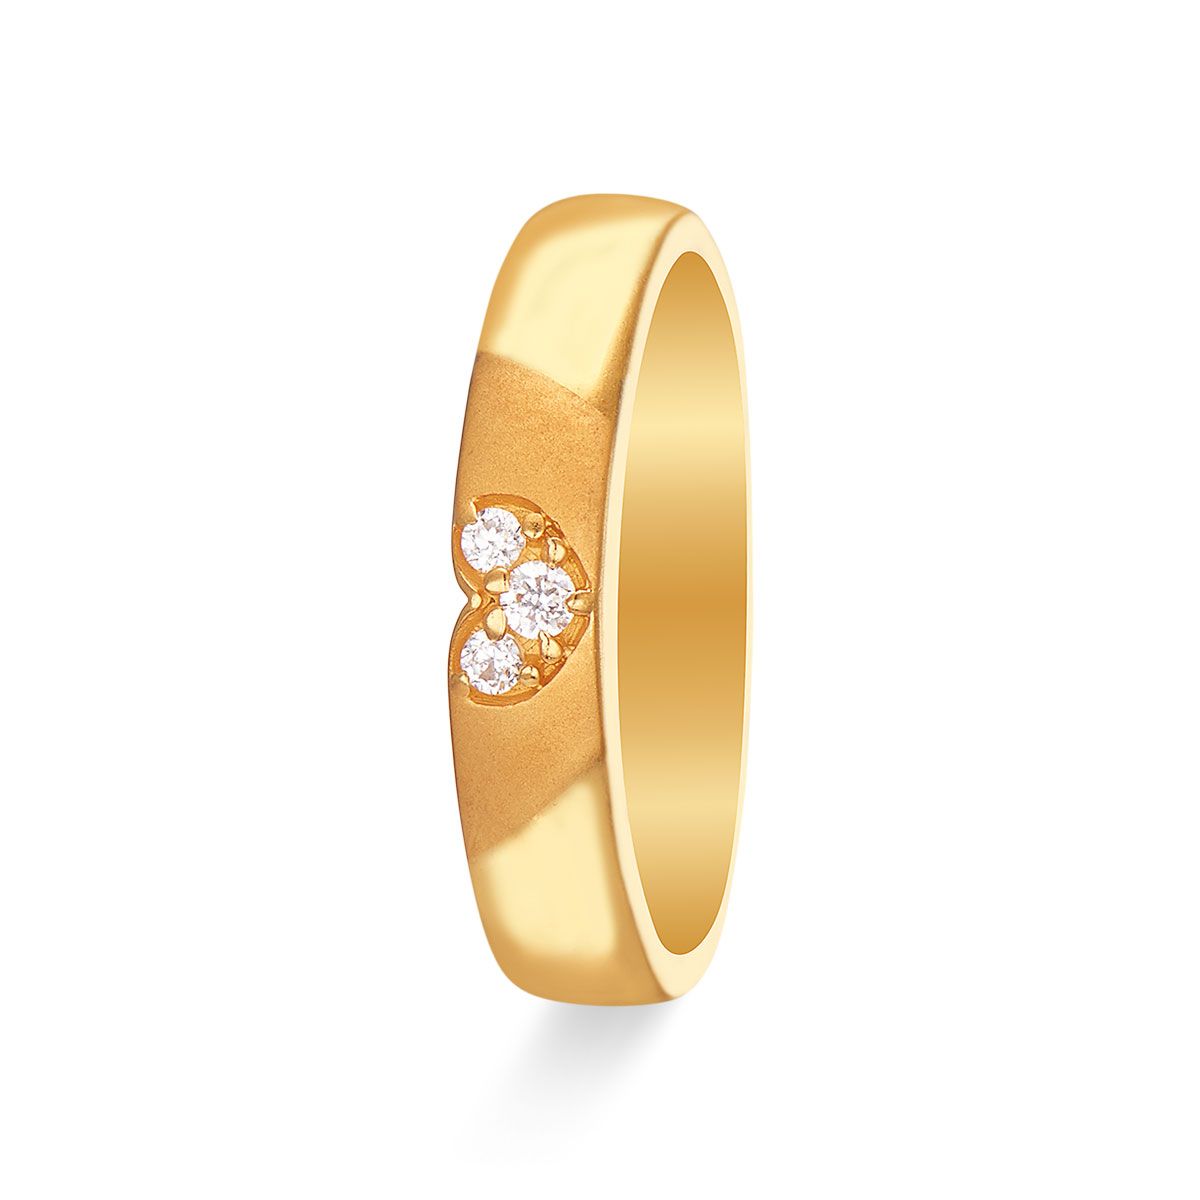 Buy 22K Gold Rings For Women Online | Rarefind Jadau Jewellery